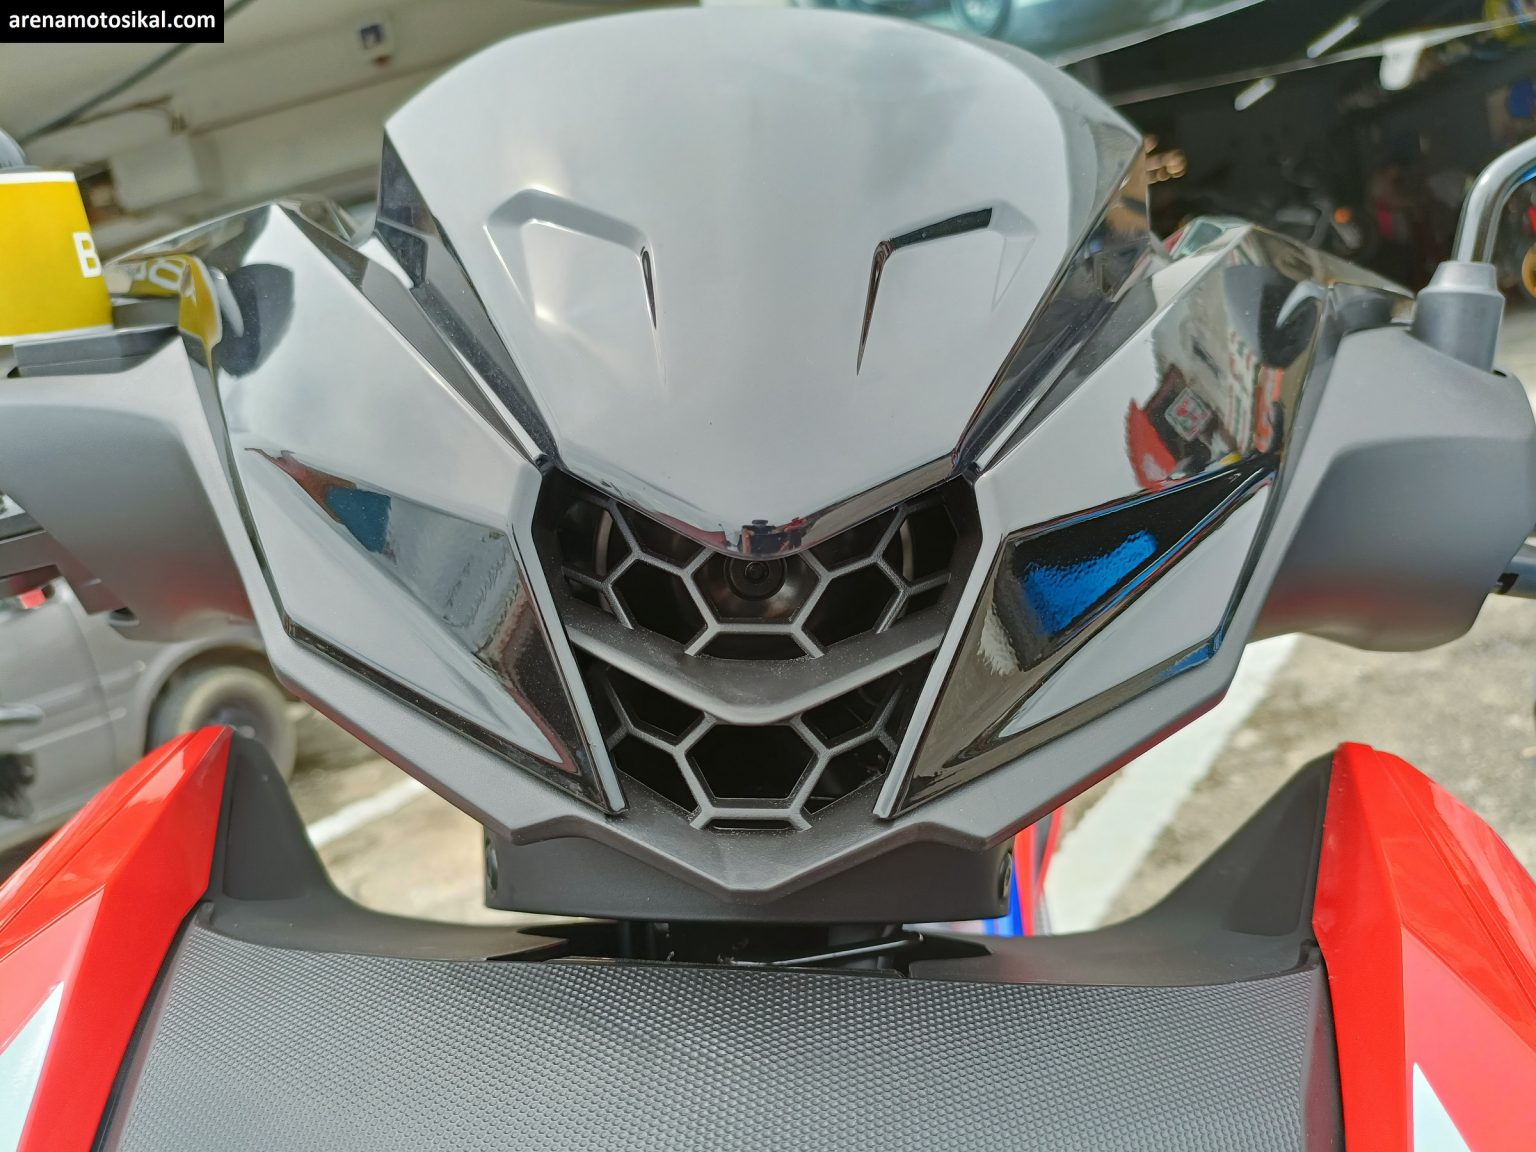 Cận cảnh xe côn tay Honda RS-X 2021 giá 47,6 triệu mới về đại lý: Đẹp không kém Yamaha Exciter 155